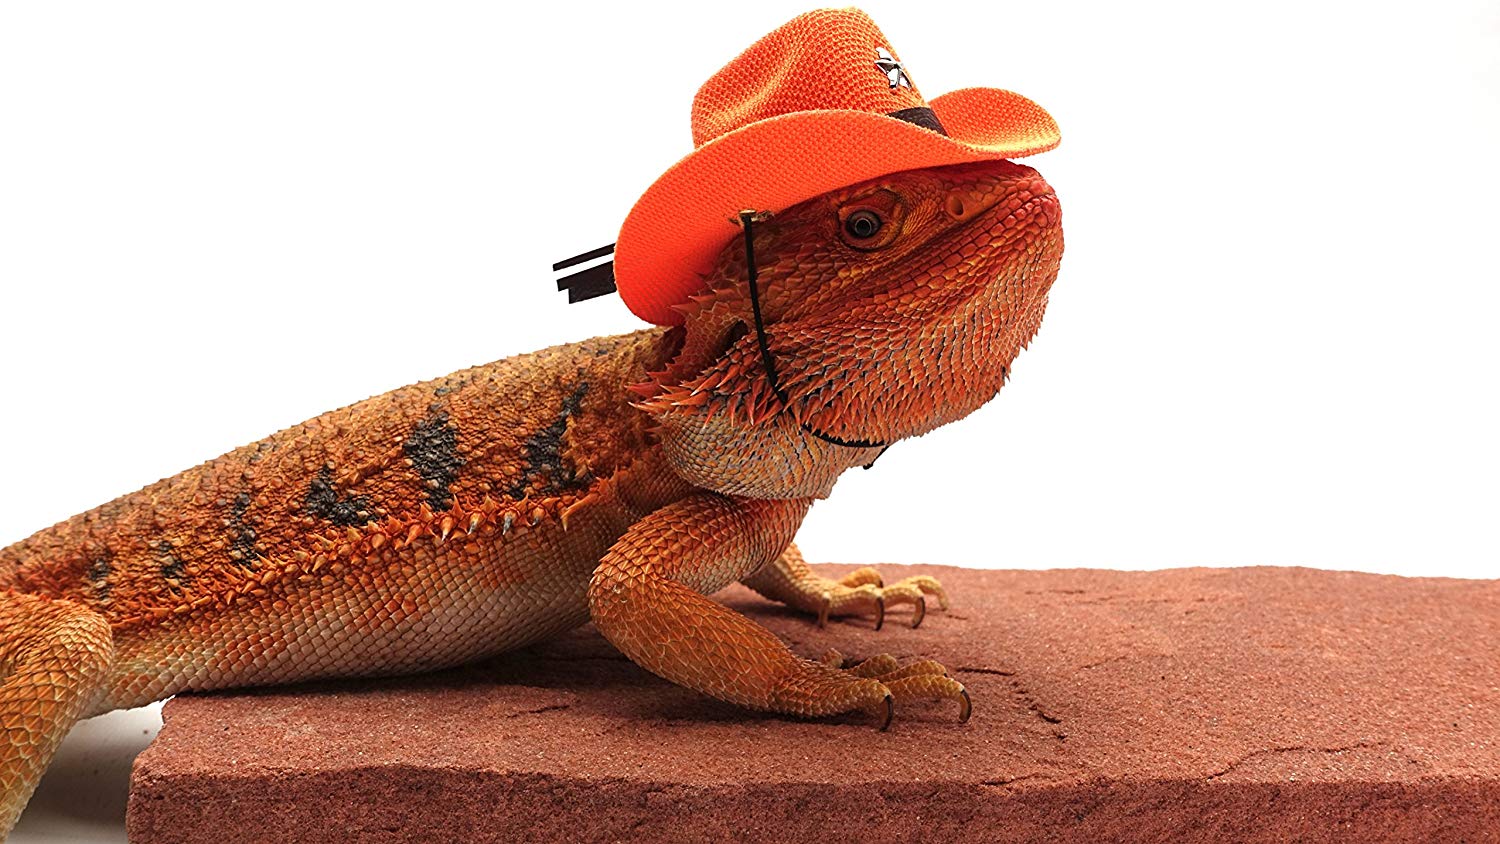 Carolina Designer Dragons Bearded Dragon Cowboy Hat, Orange - Carolina  Designer Dragons